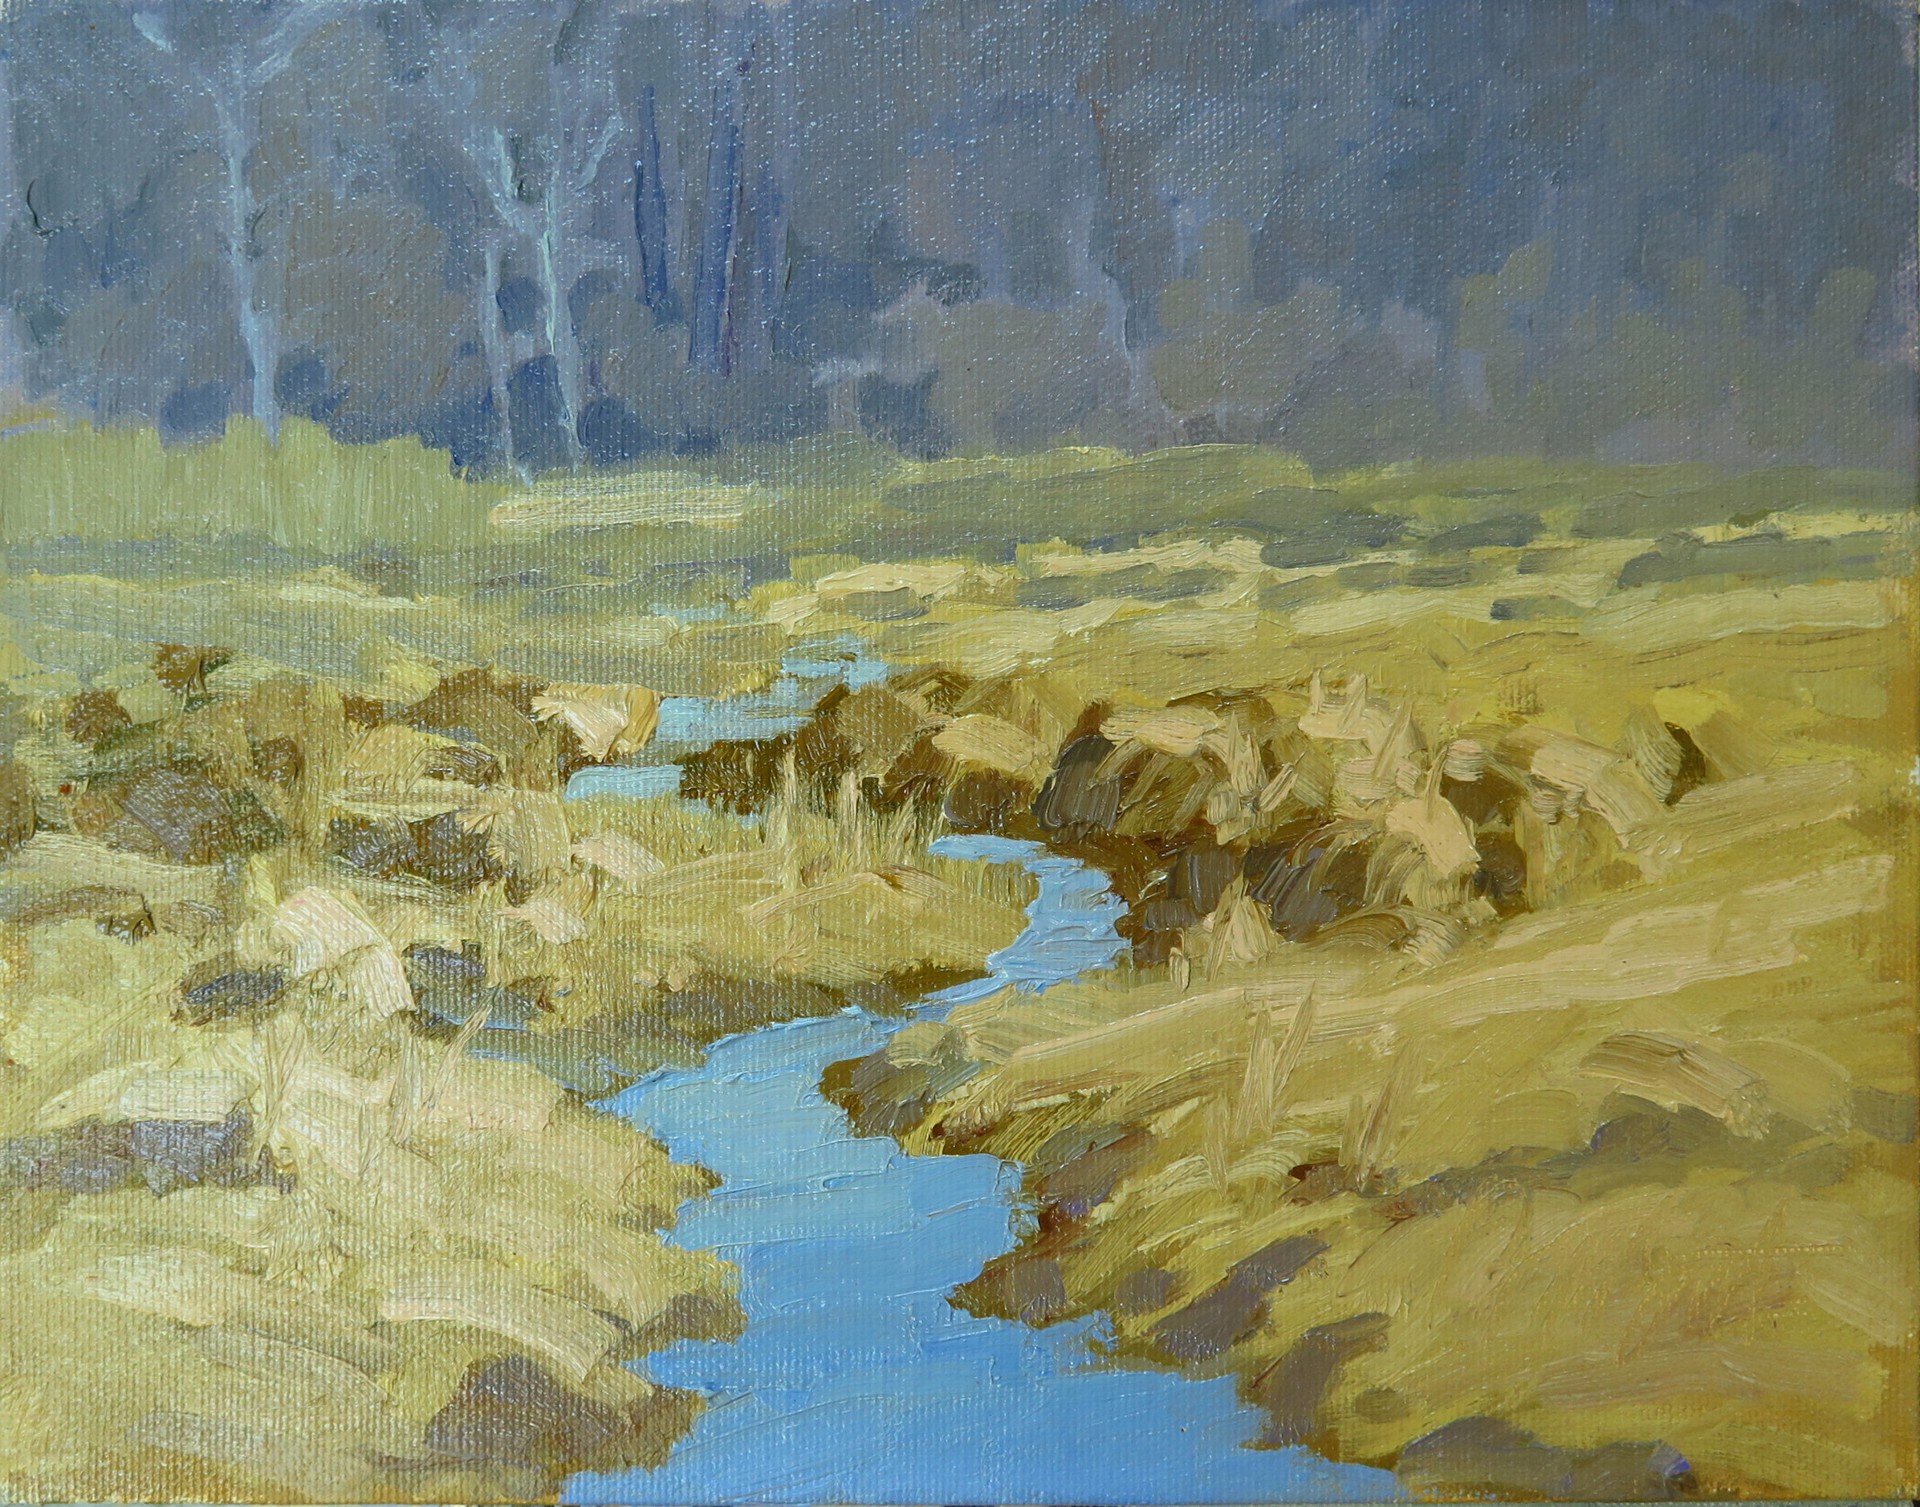 A Creek Runs Through It by Brian M. Smith